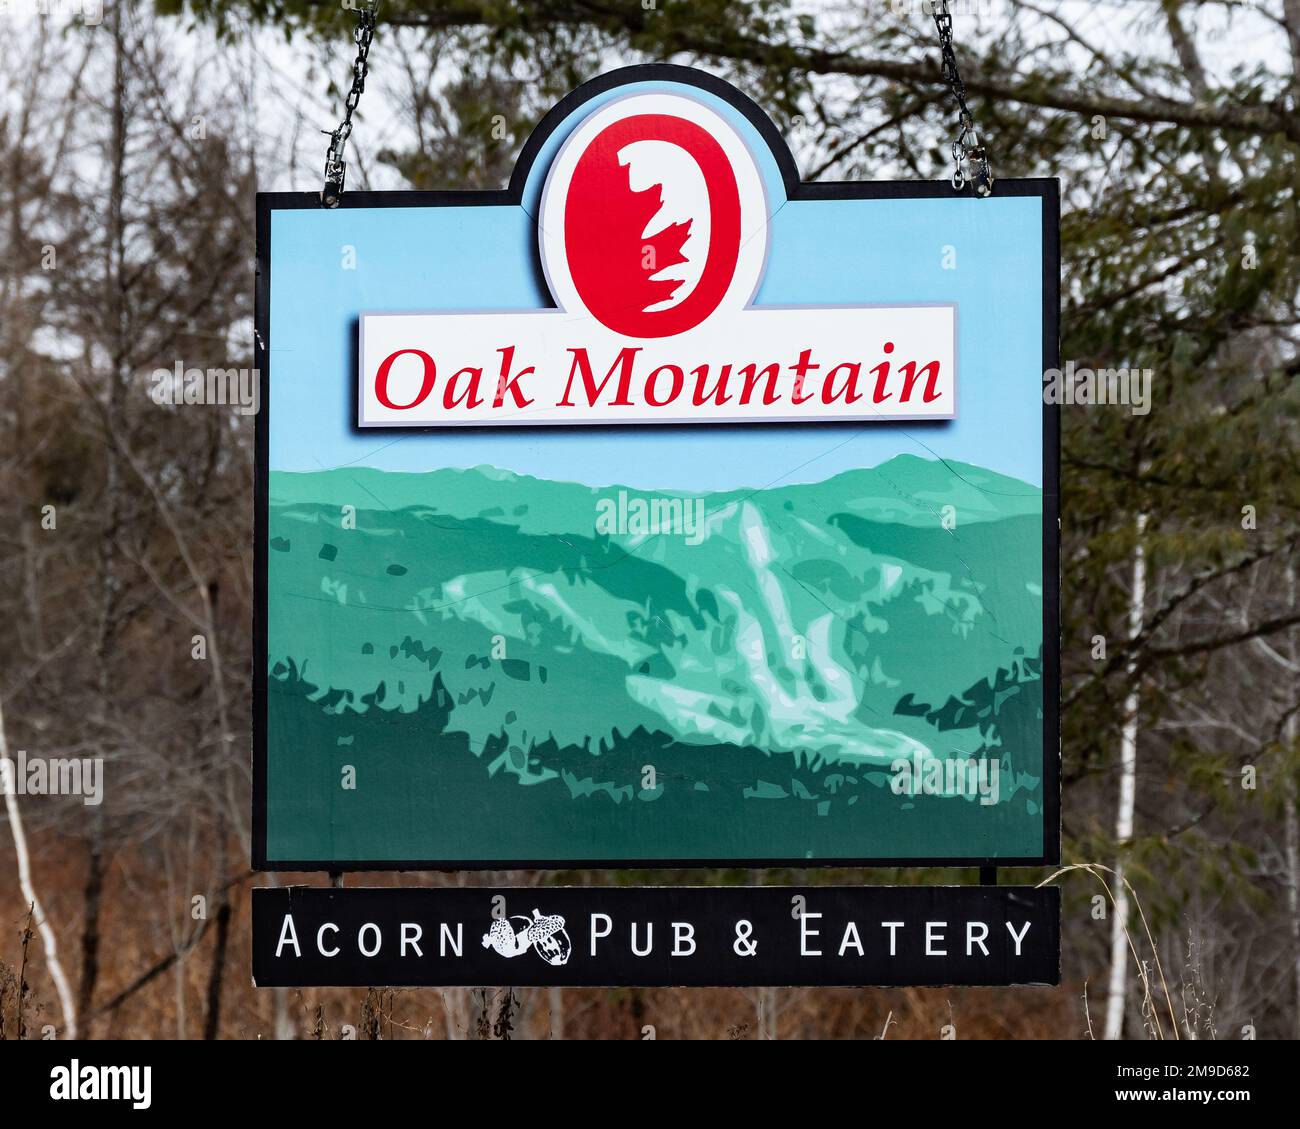 Ein Straßenschild für das Oak Mountain Sky Center und das Acorn Pub and Eatery in Speculator, NY, in den Adirondack Mountains Stockfoto